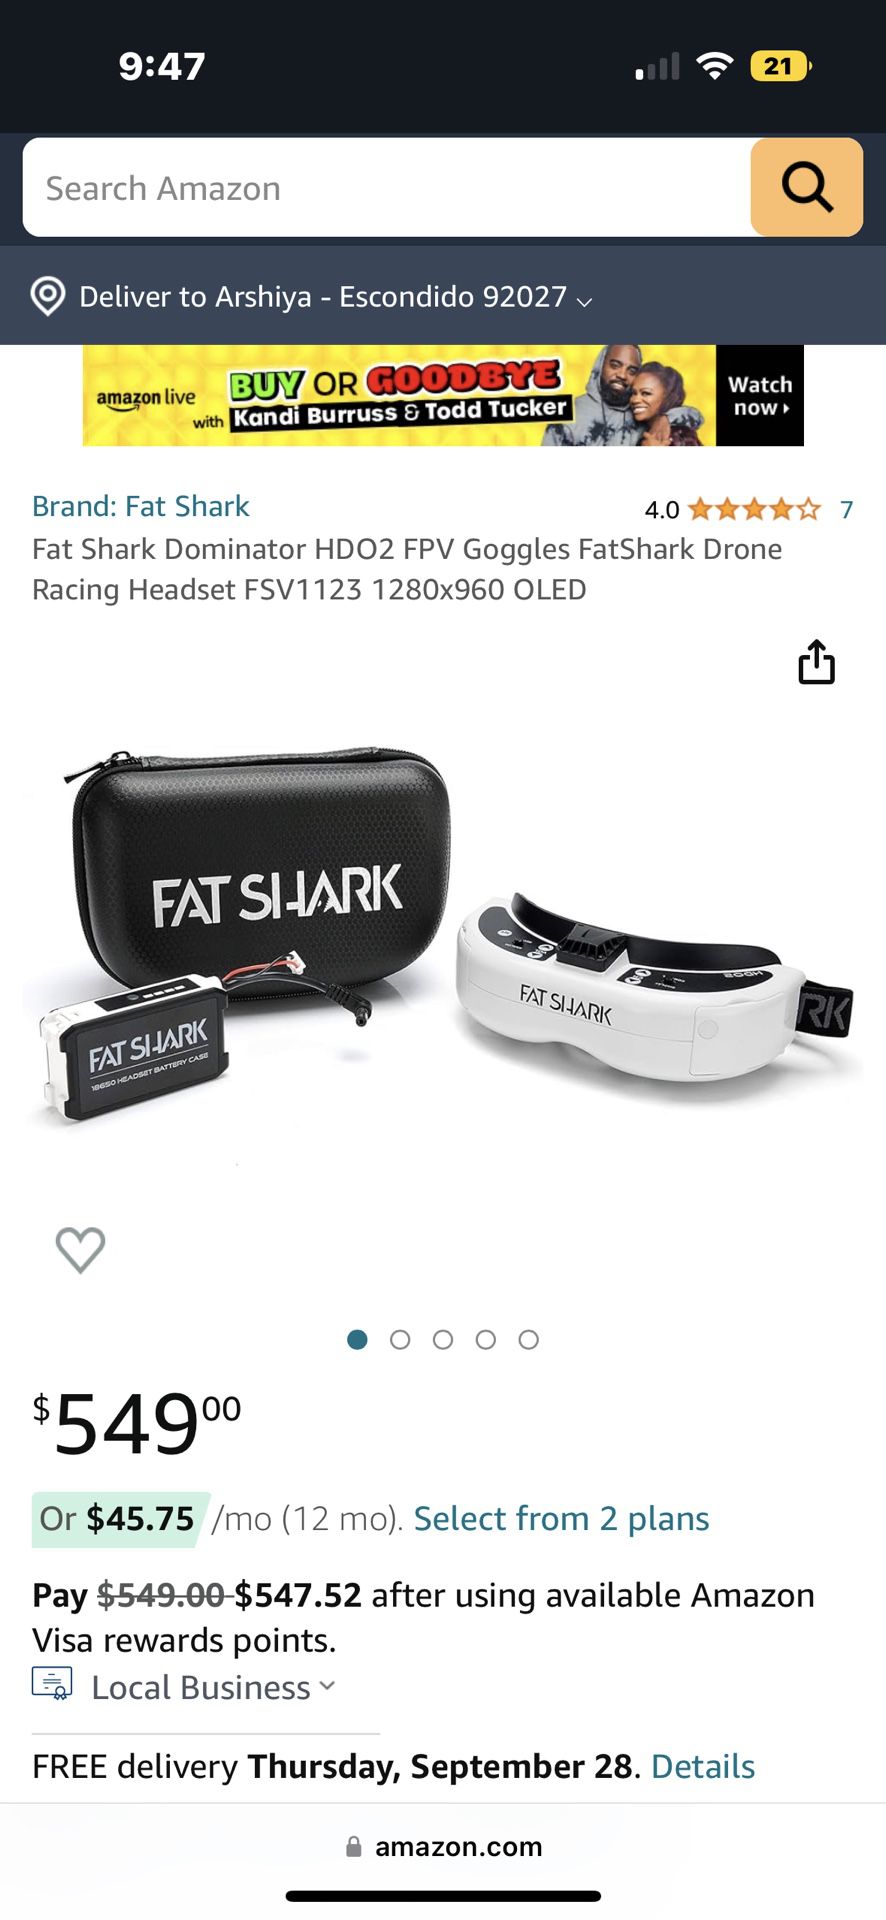 Fat Shark Dominator HDO2 FPV Goggles + ImmersionRC RapidFIRE Module